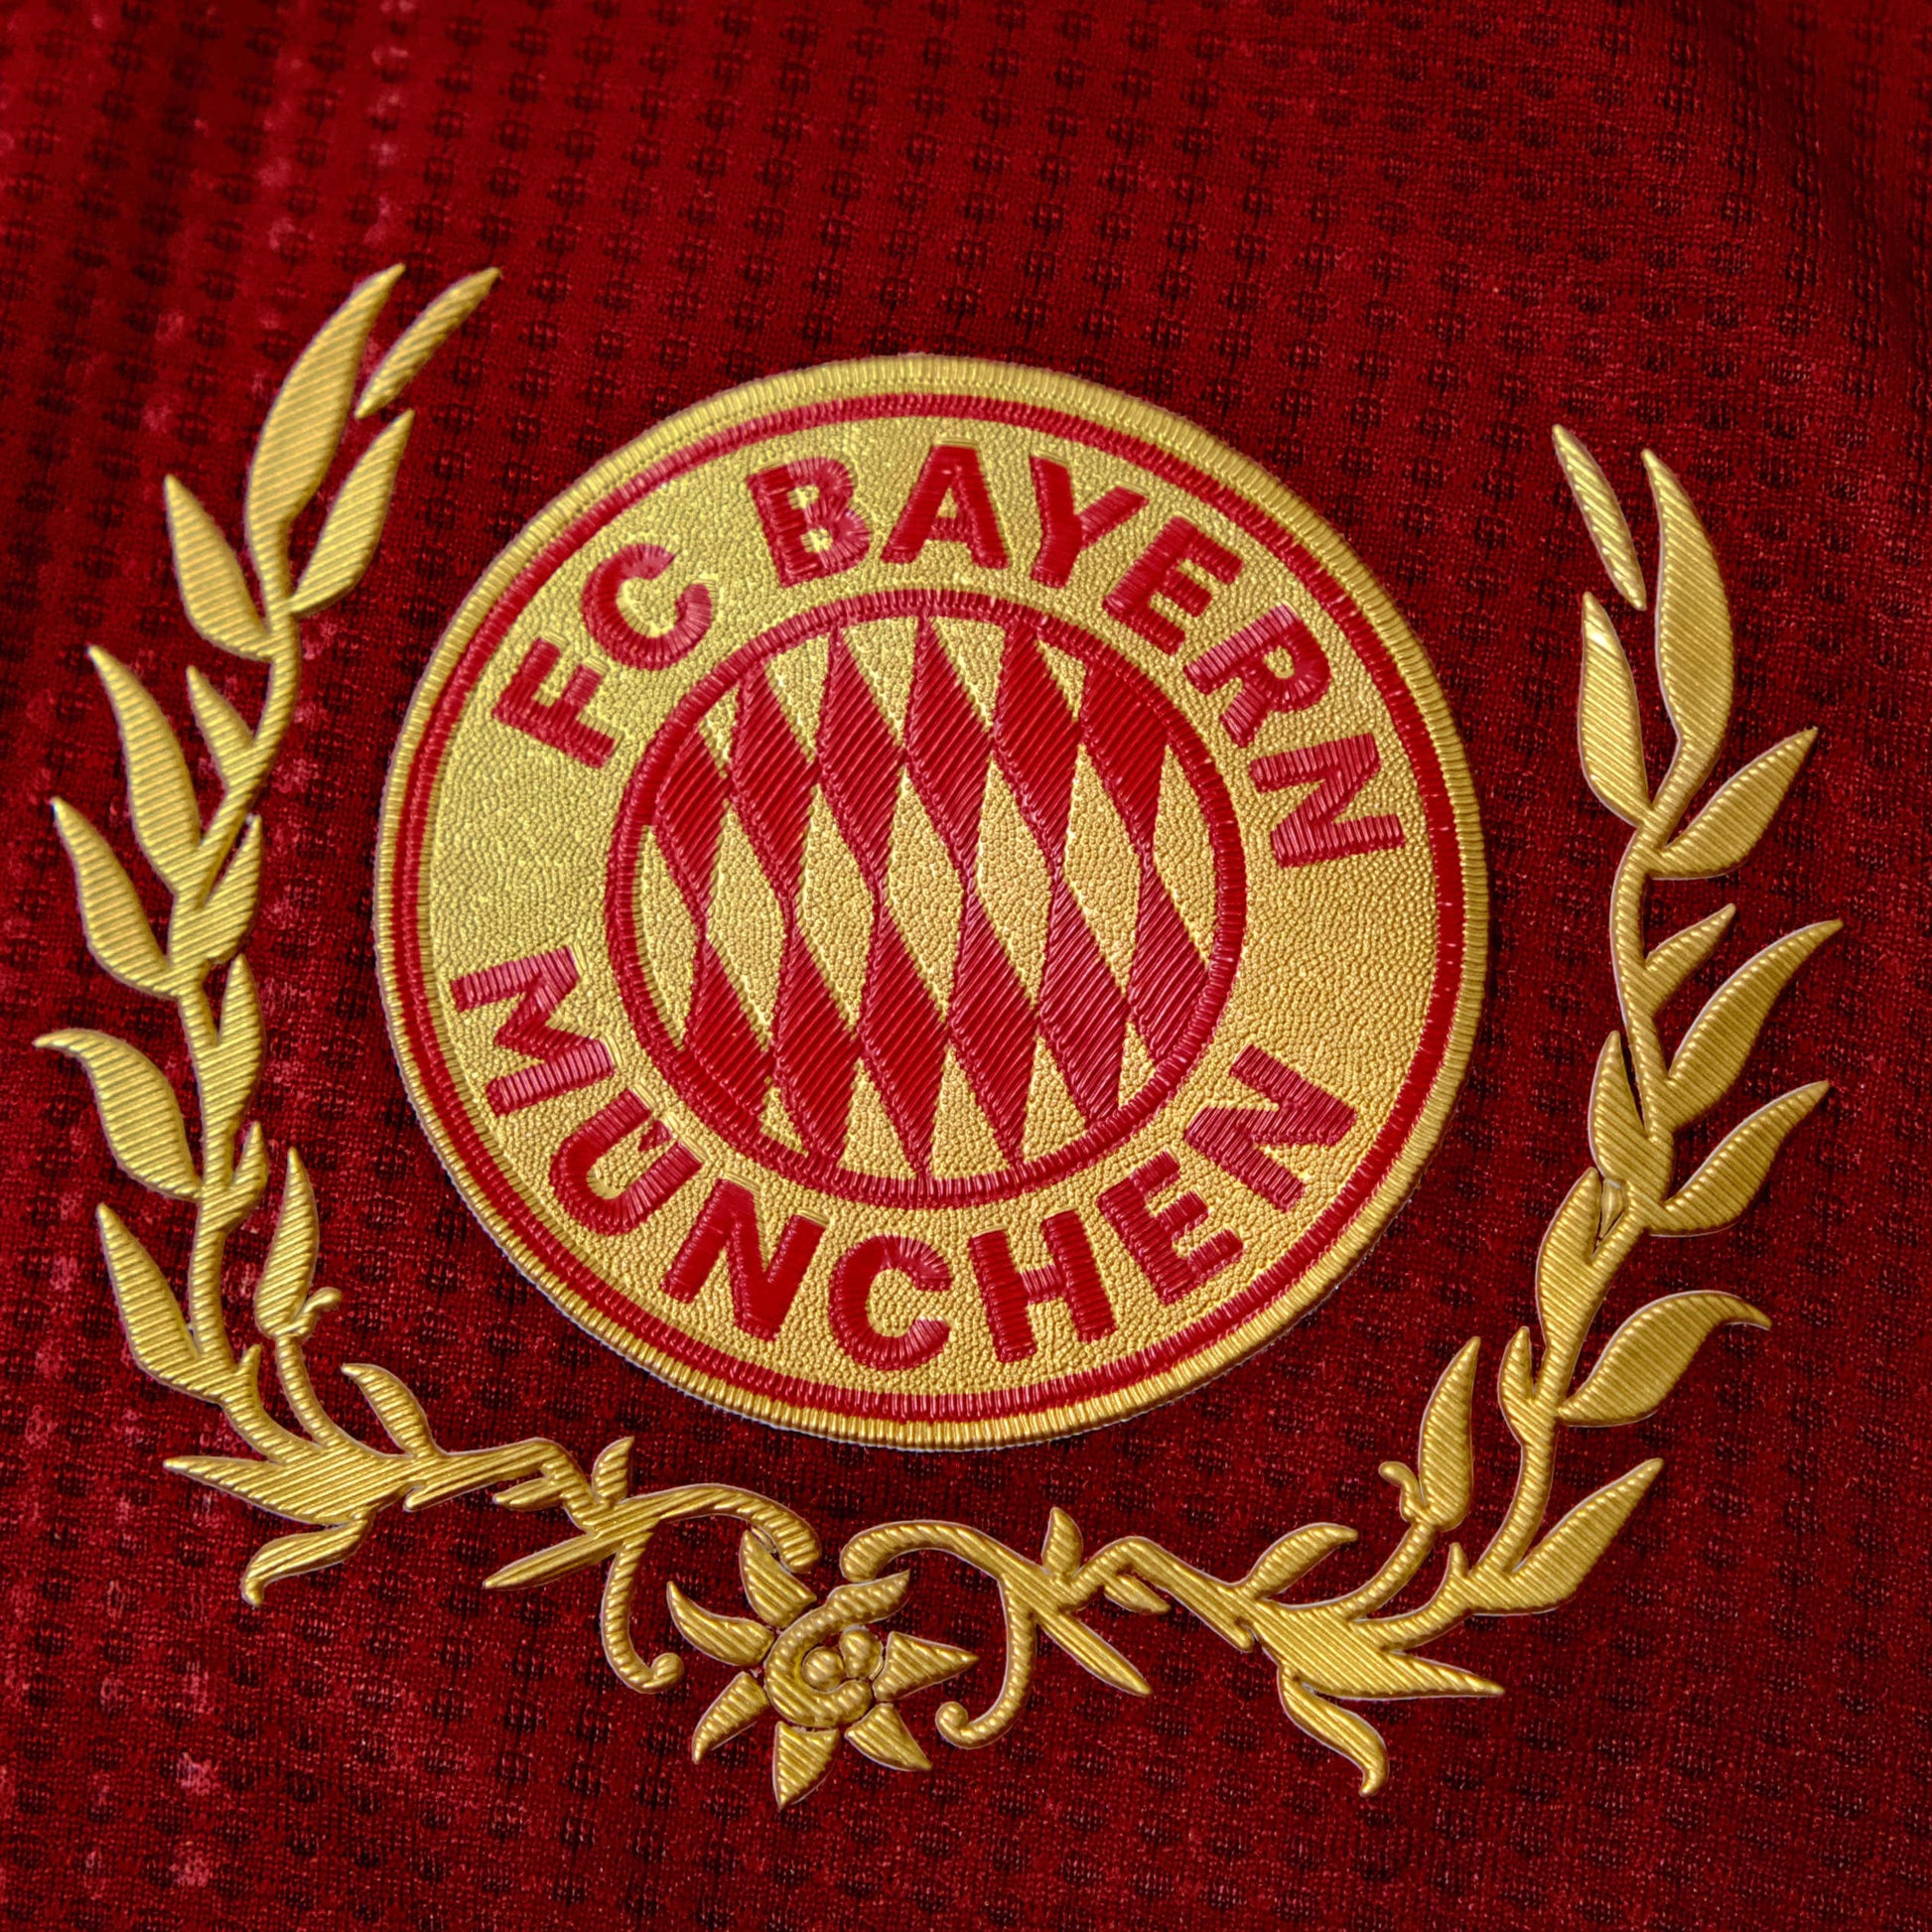 BAYERN MUNICH 2022/23 'OKTOBERFEST' SPECIAL EDITION SHIRT - Shirt - False9Fits